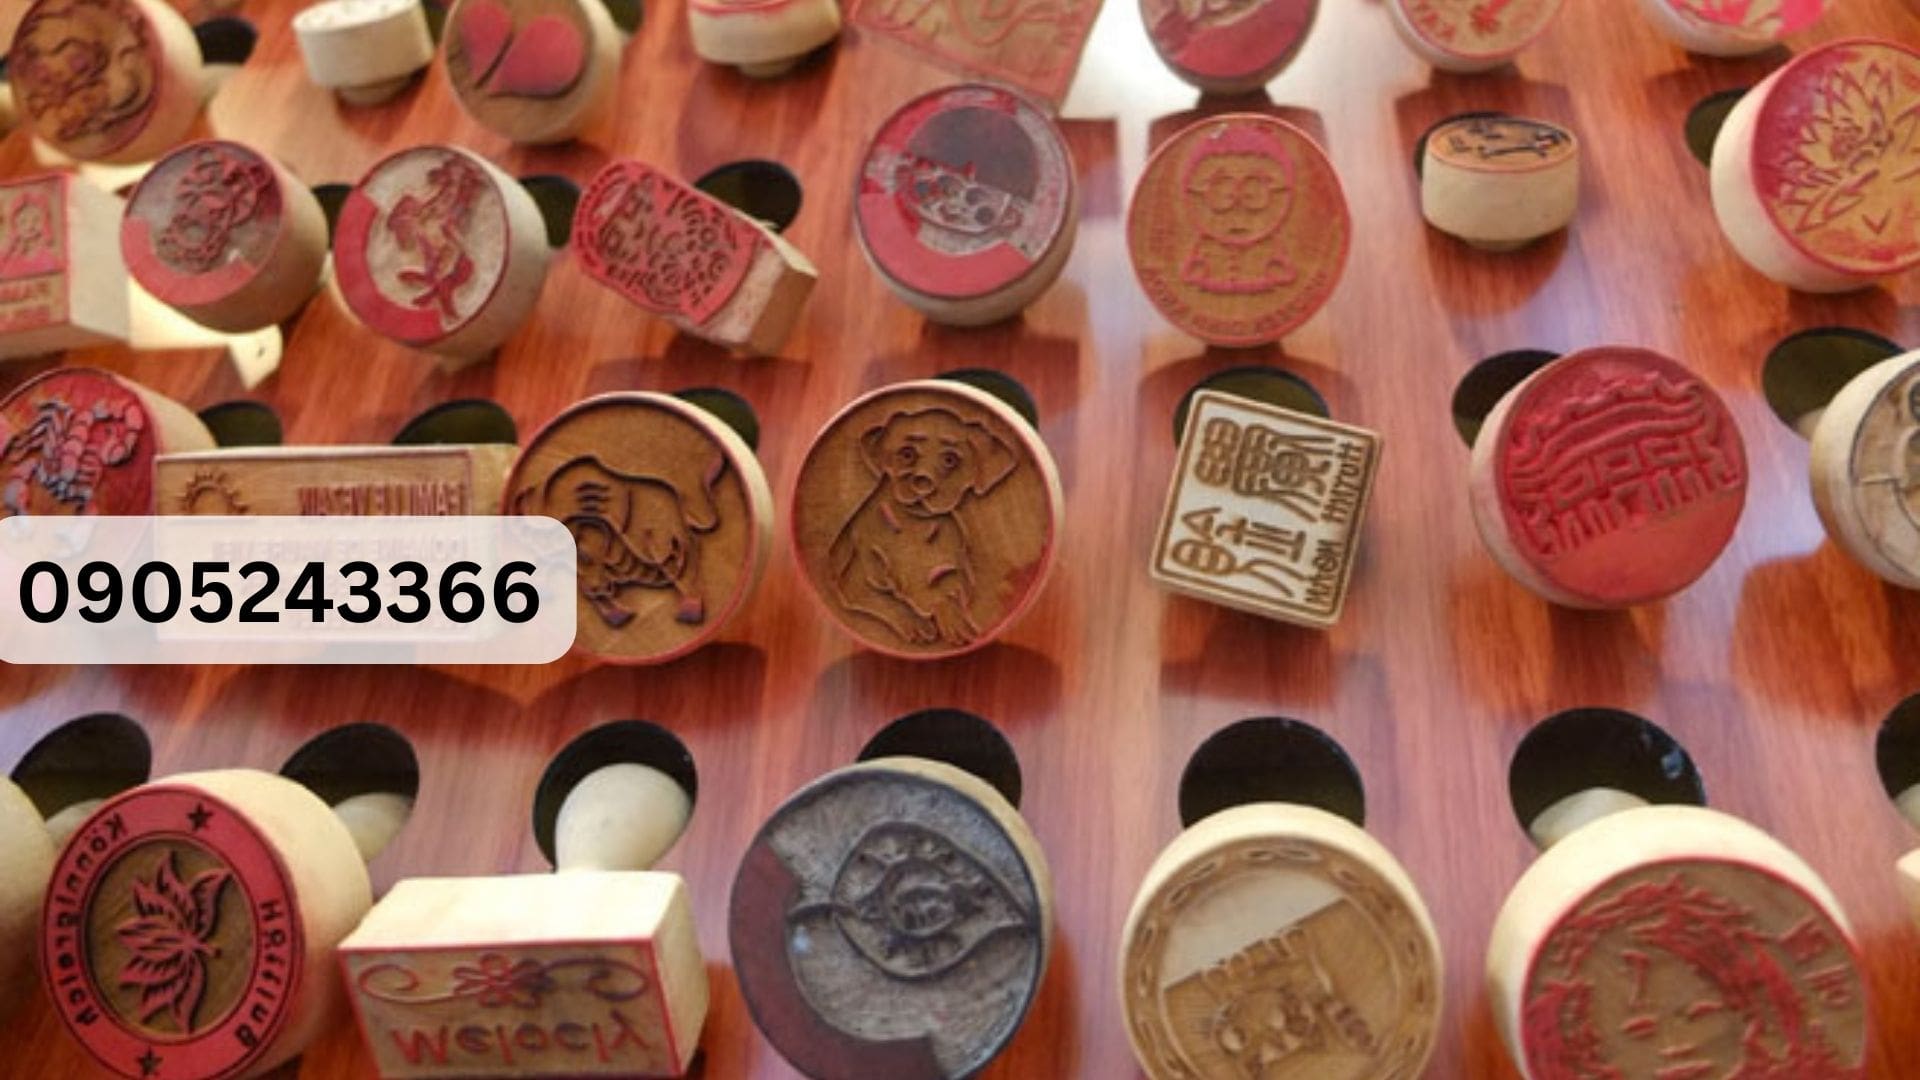 Công ty Trình Anh - Đơn vị khắc dấu tại Đà Nẵng chất lượng